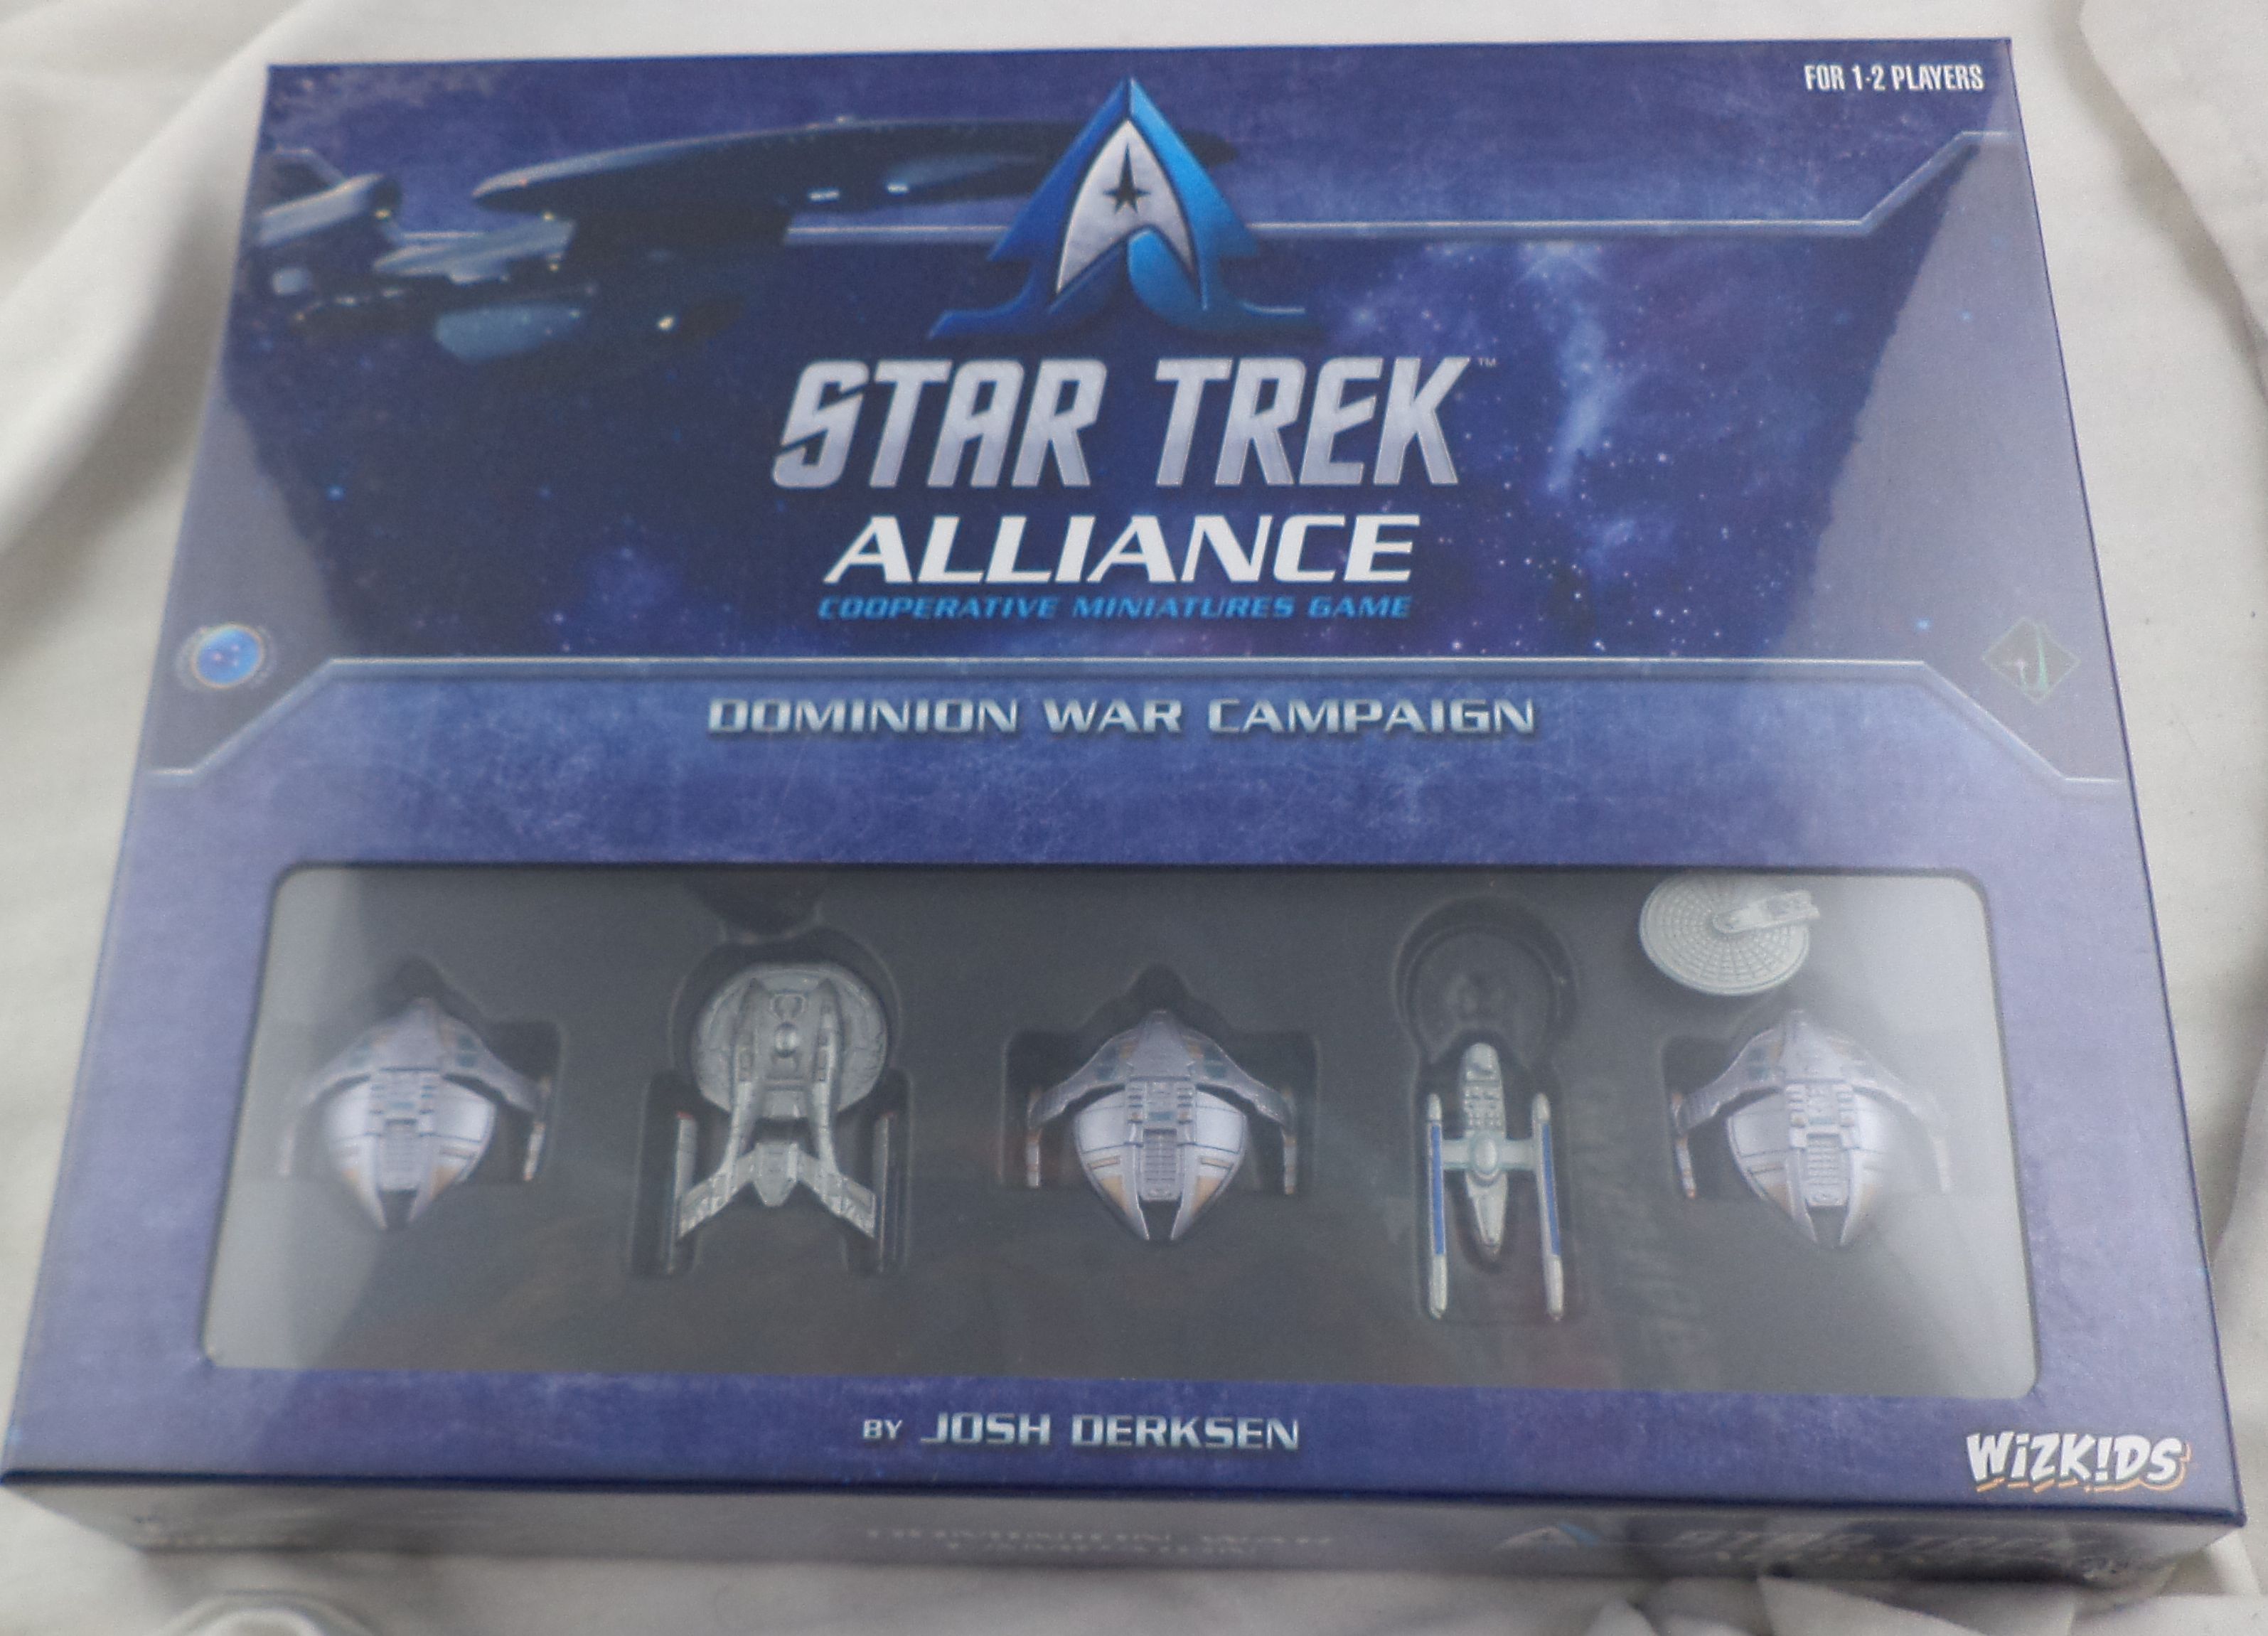 PRESALE Dominion War Campaign starter box wizkids New Star Trek Alliance 